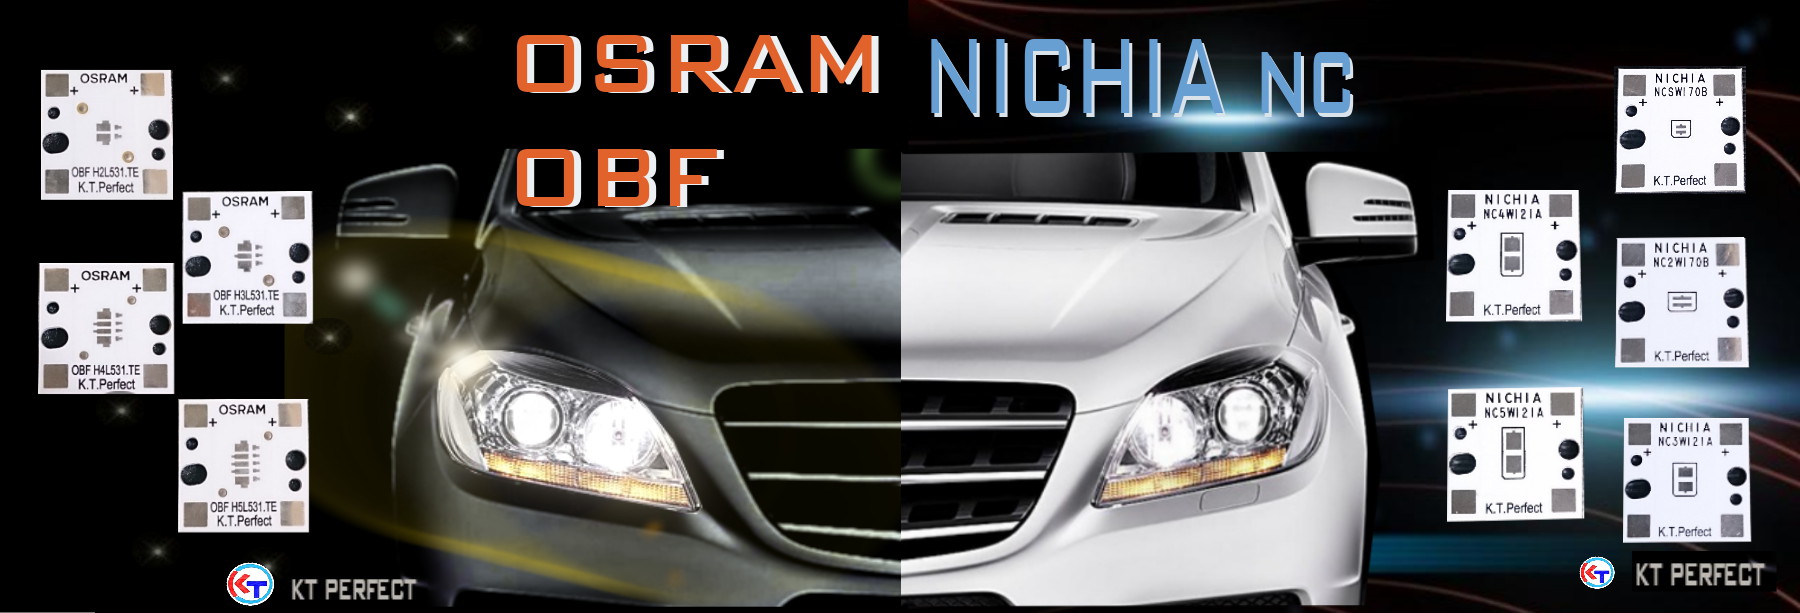 OSRAM-OBF/NICHA NC 車用系列